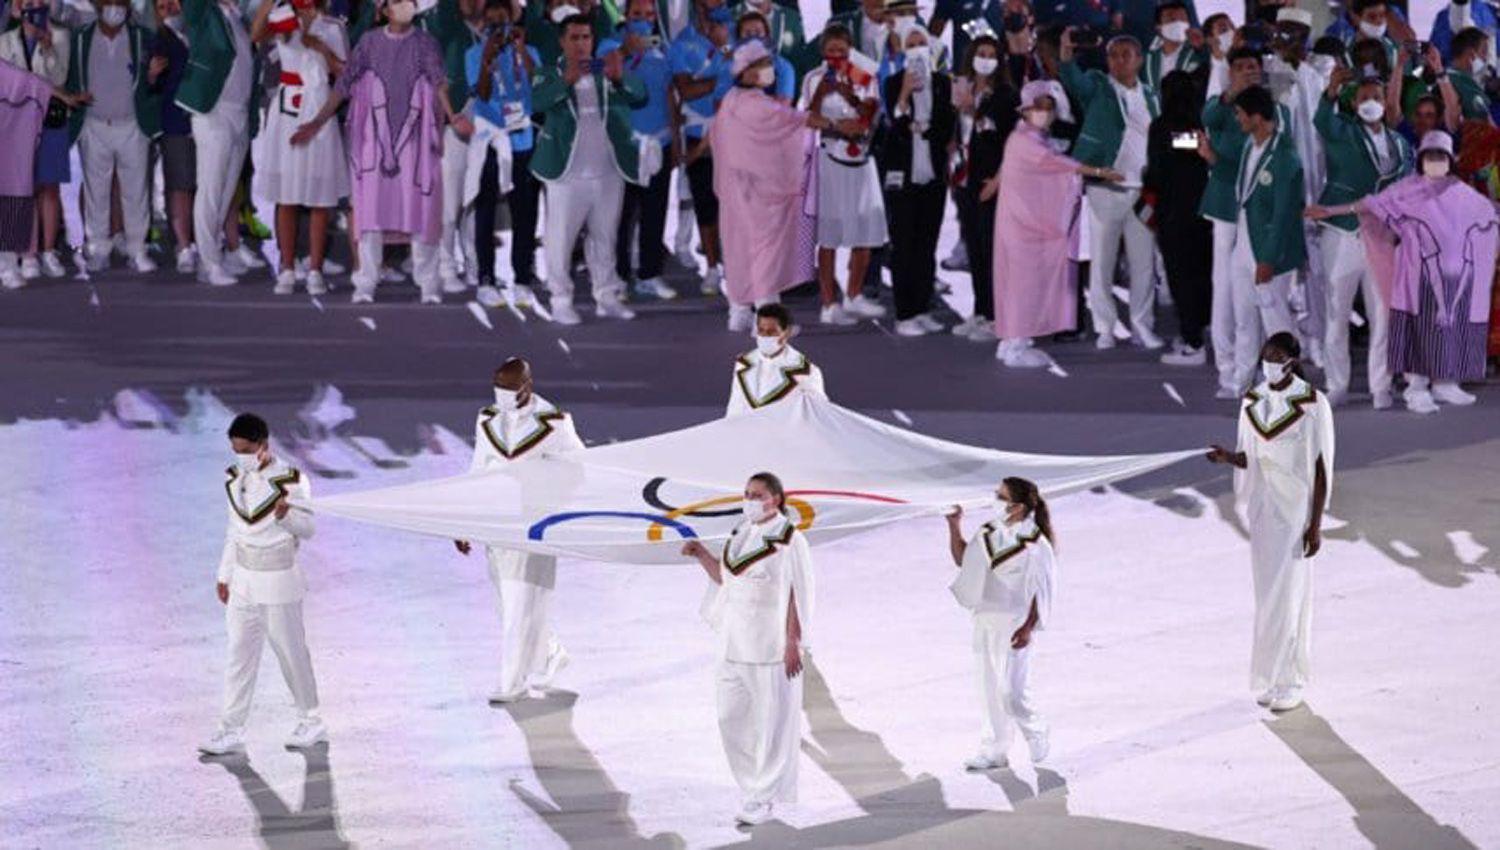 Paula Pareto tuvo su merecido reconocimiento en la ceremonia de los Juegos Oliacutempicos Tokio 2020